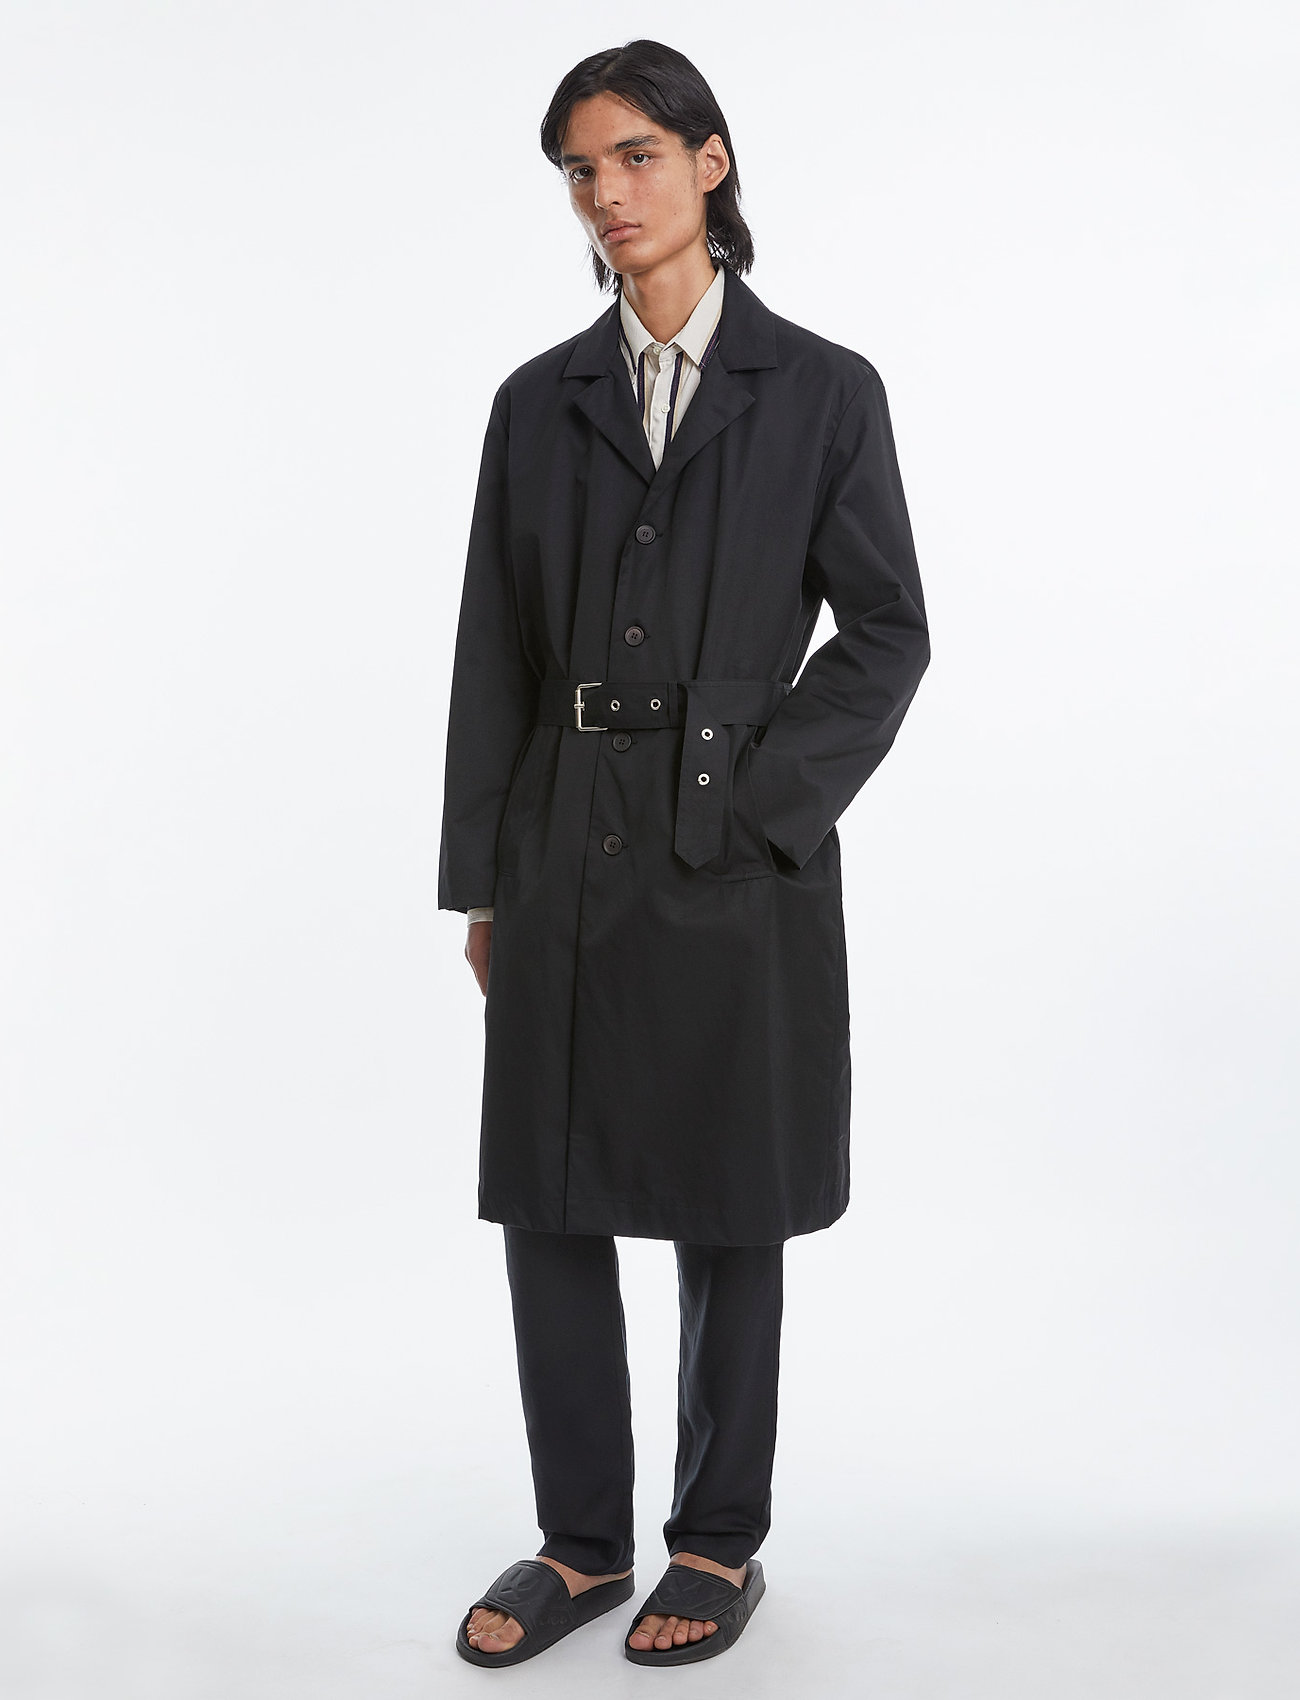 Schnayderman's - Belted Overcoat - trench coats - black - 0